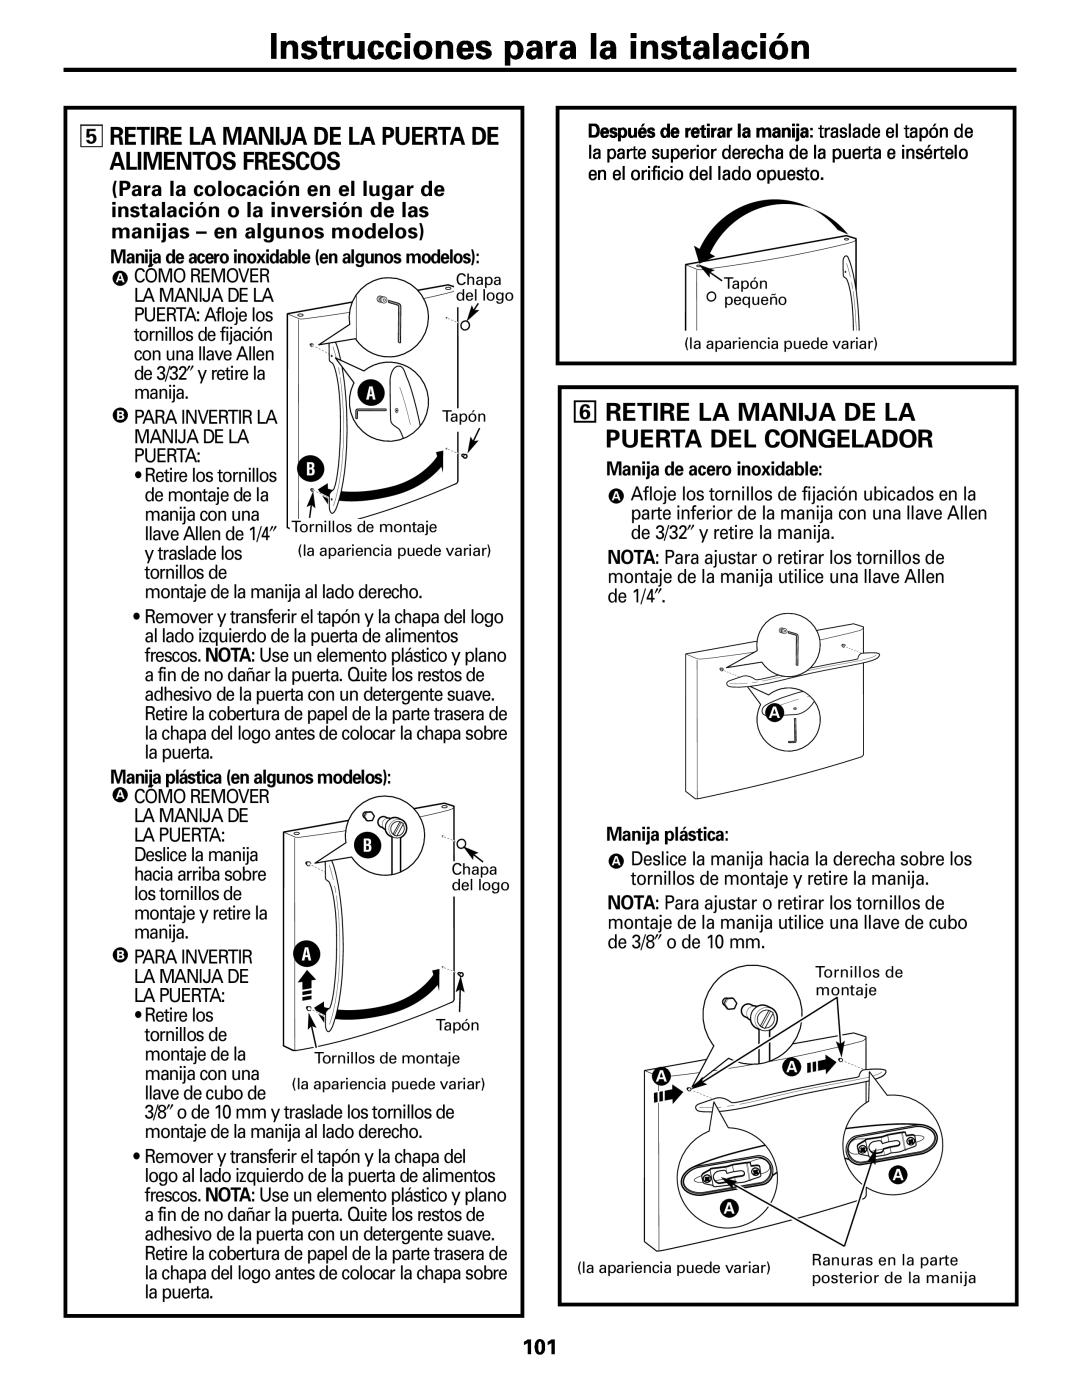 GE Monogram 20 Instrucciones para la instalación, Retire La Manija De La Puerta Del Congelador, Manija de acero inoxidable 